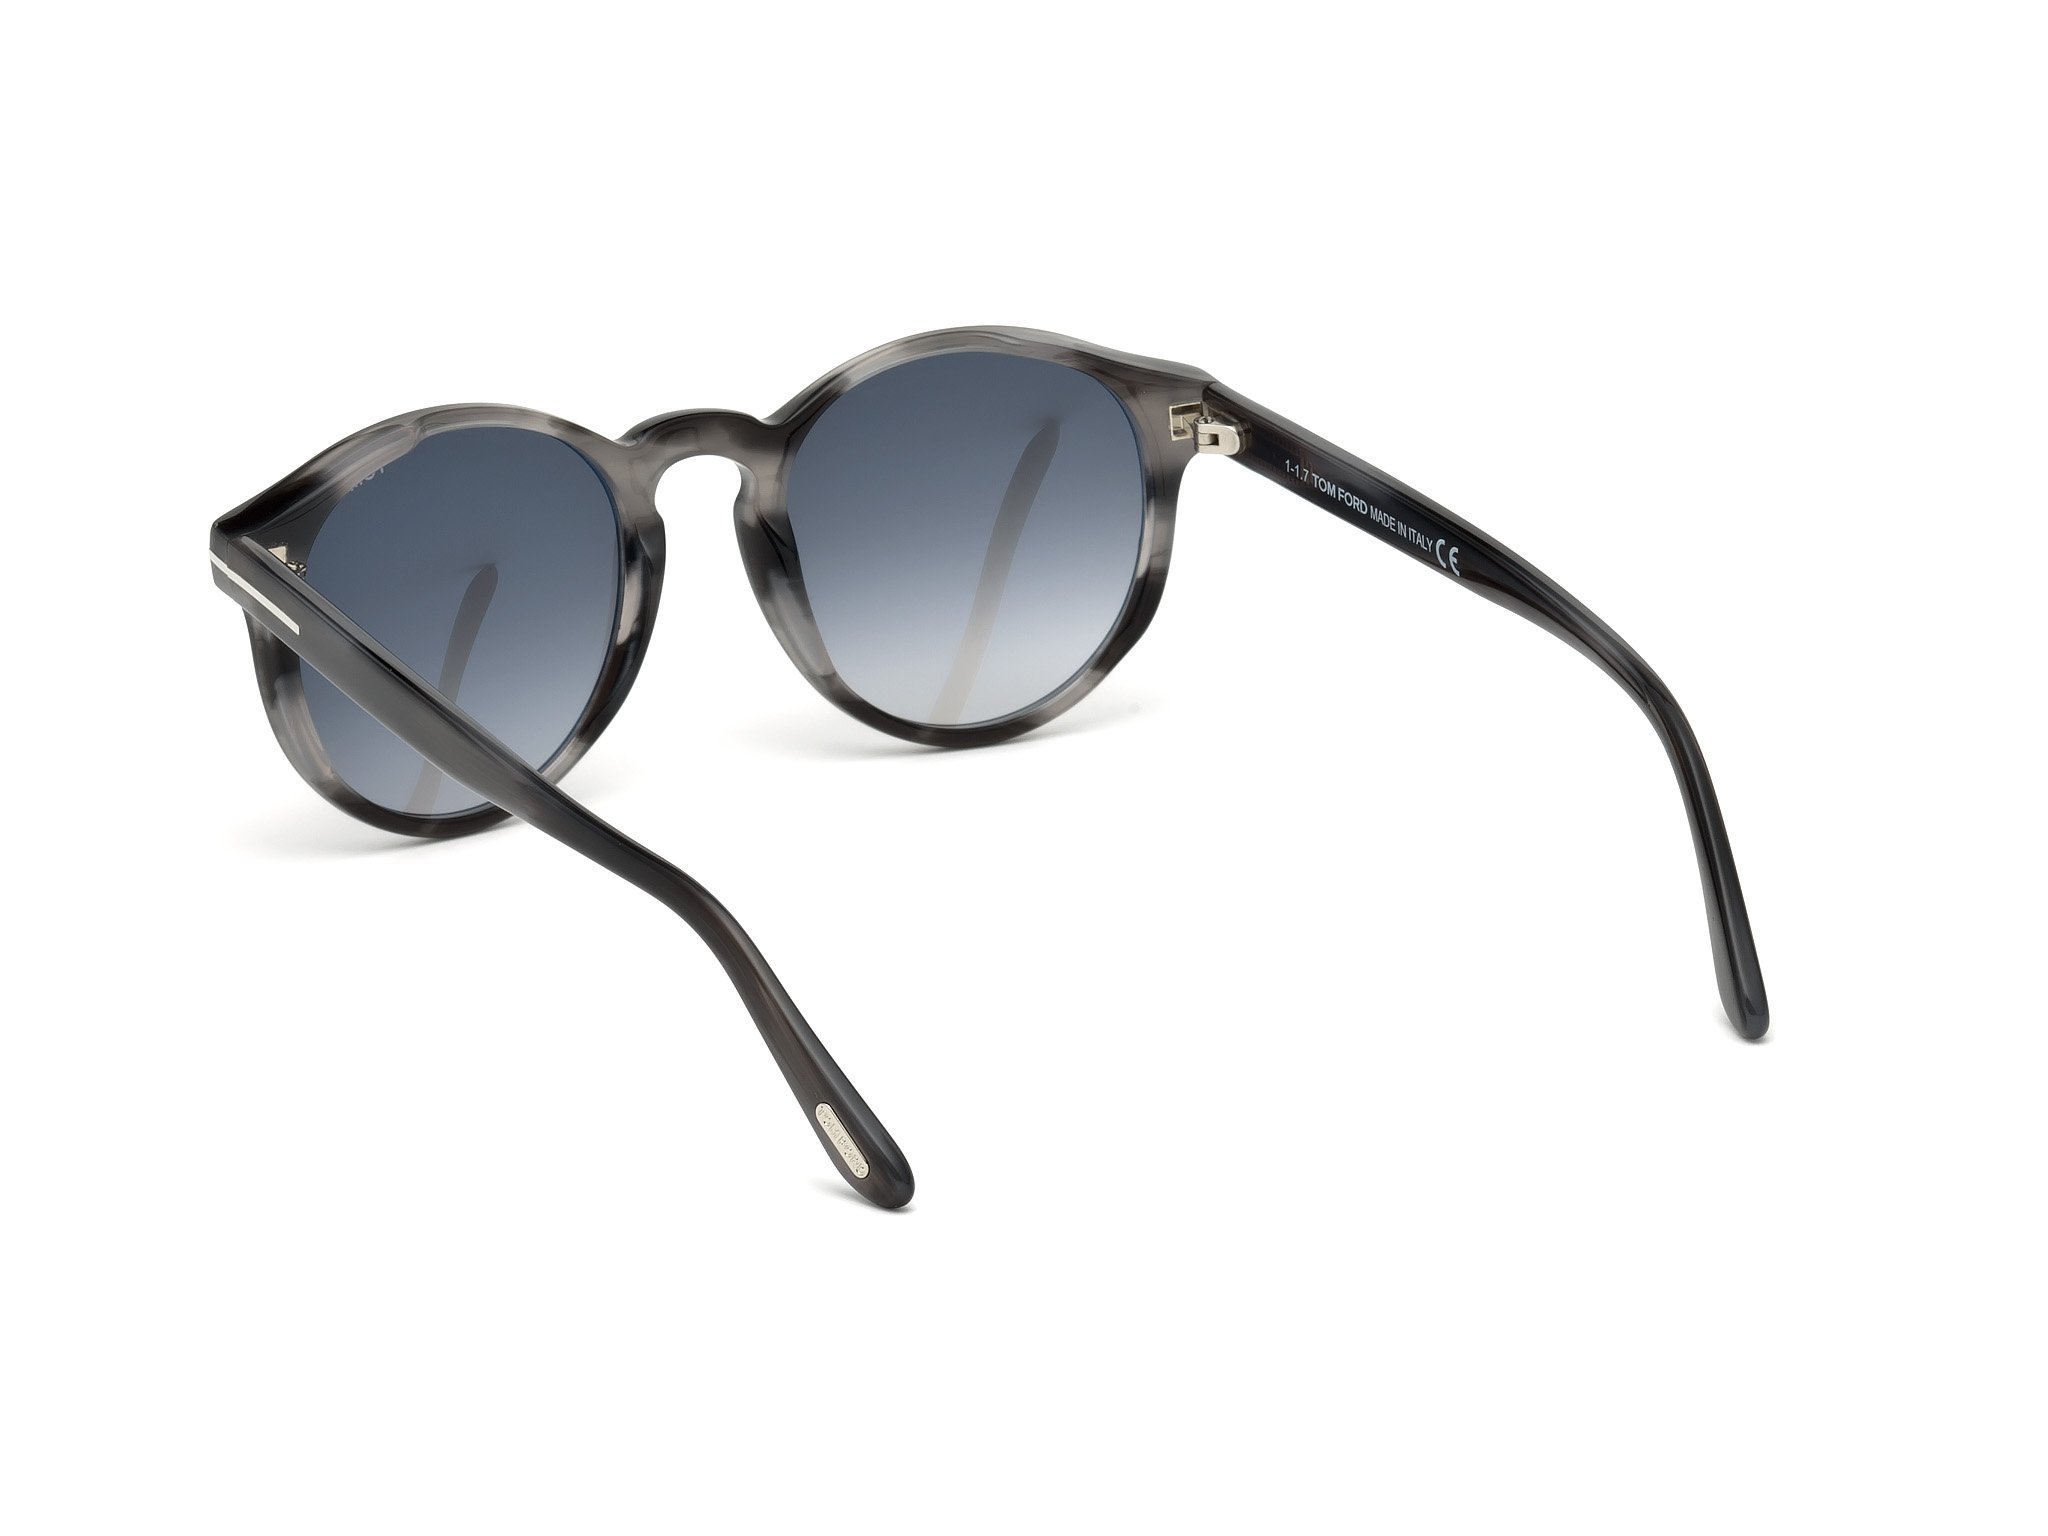 Das Bild zeigt die Sonnenbrille FT0591 20B von der Marke Tom Ford in grau.